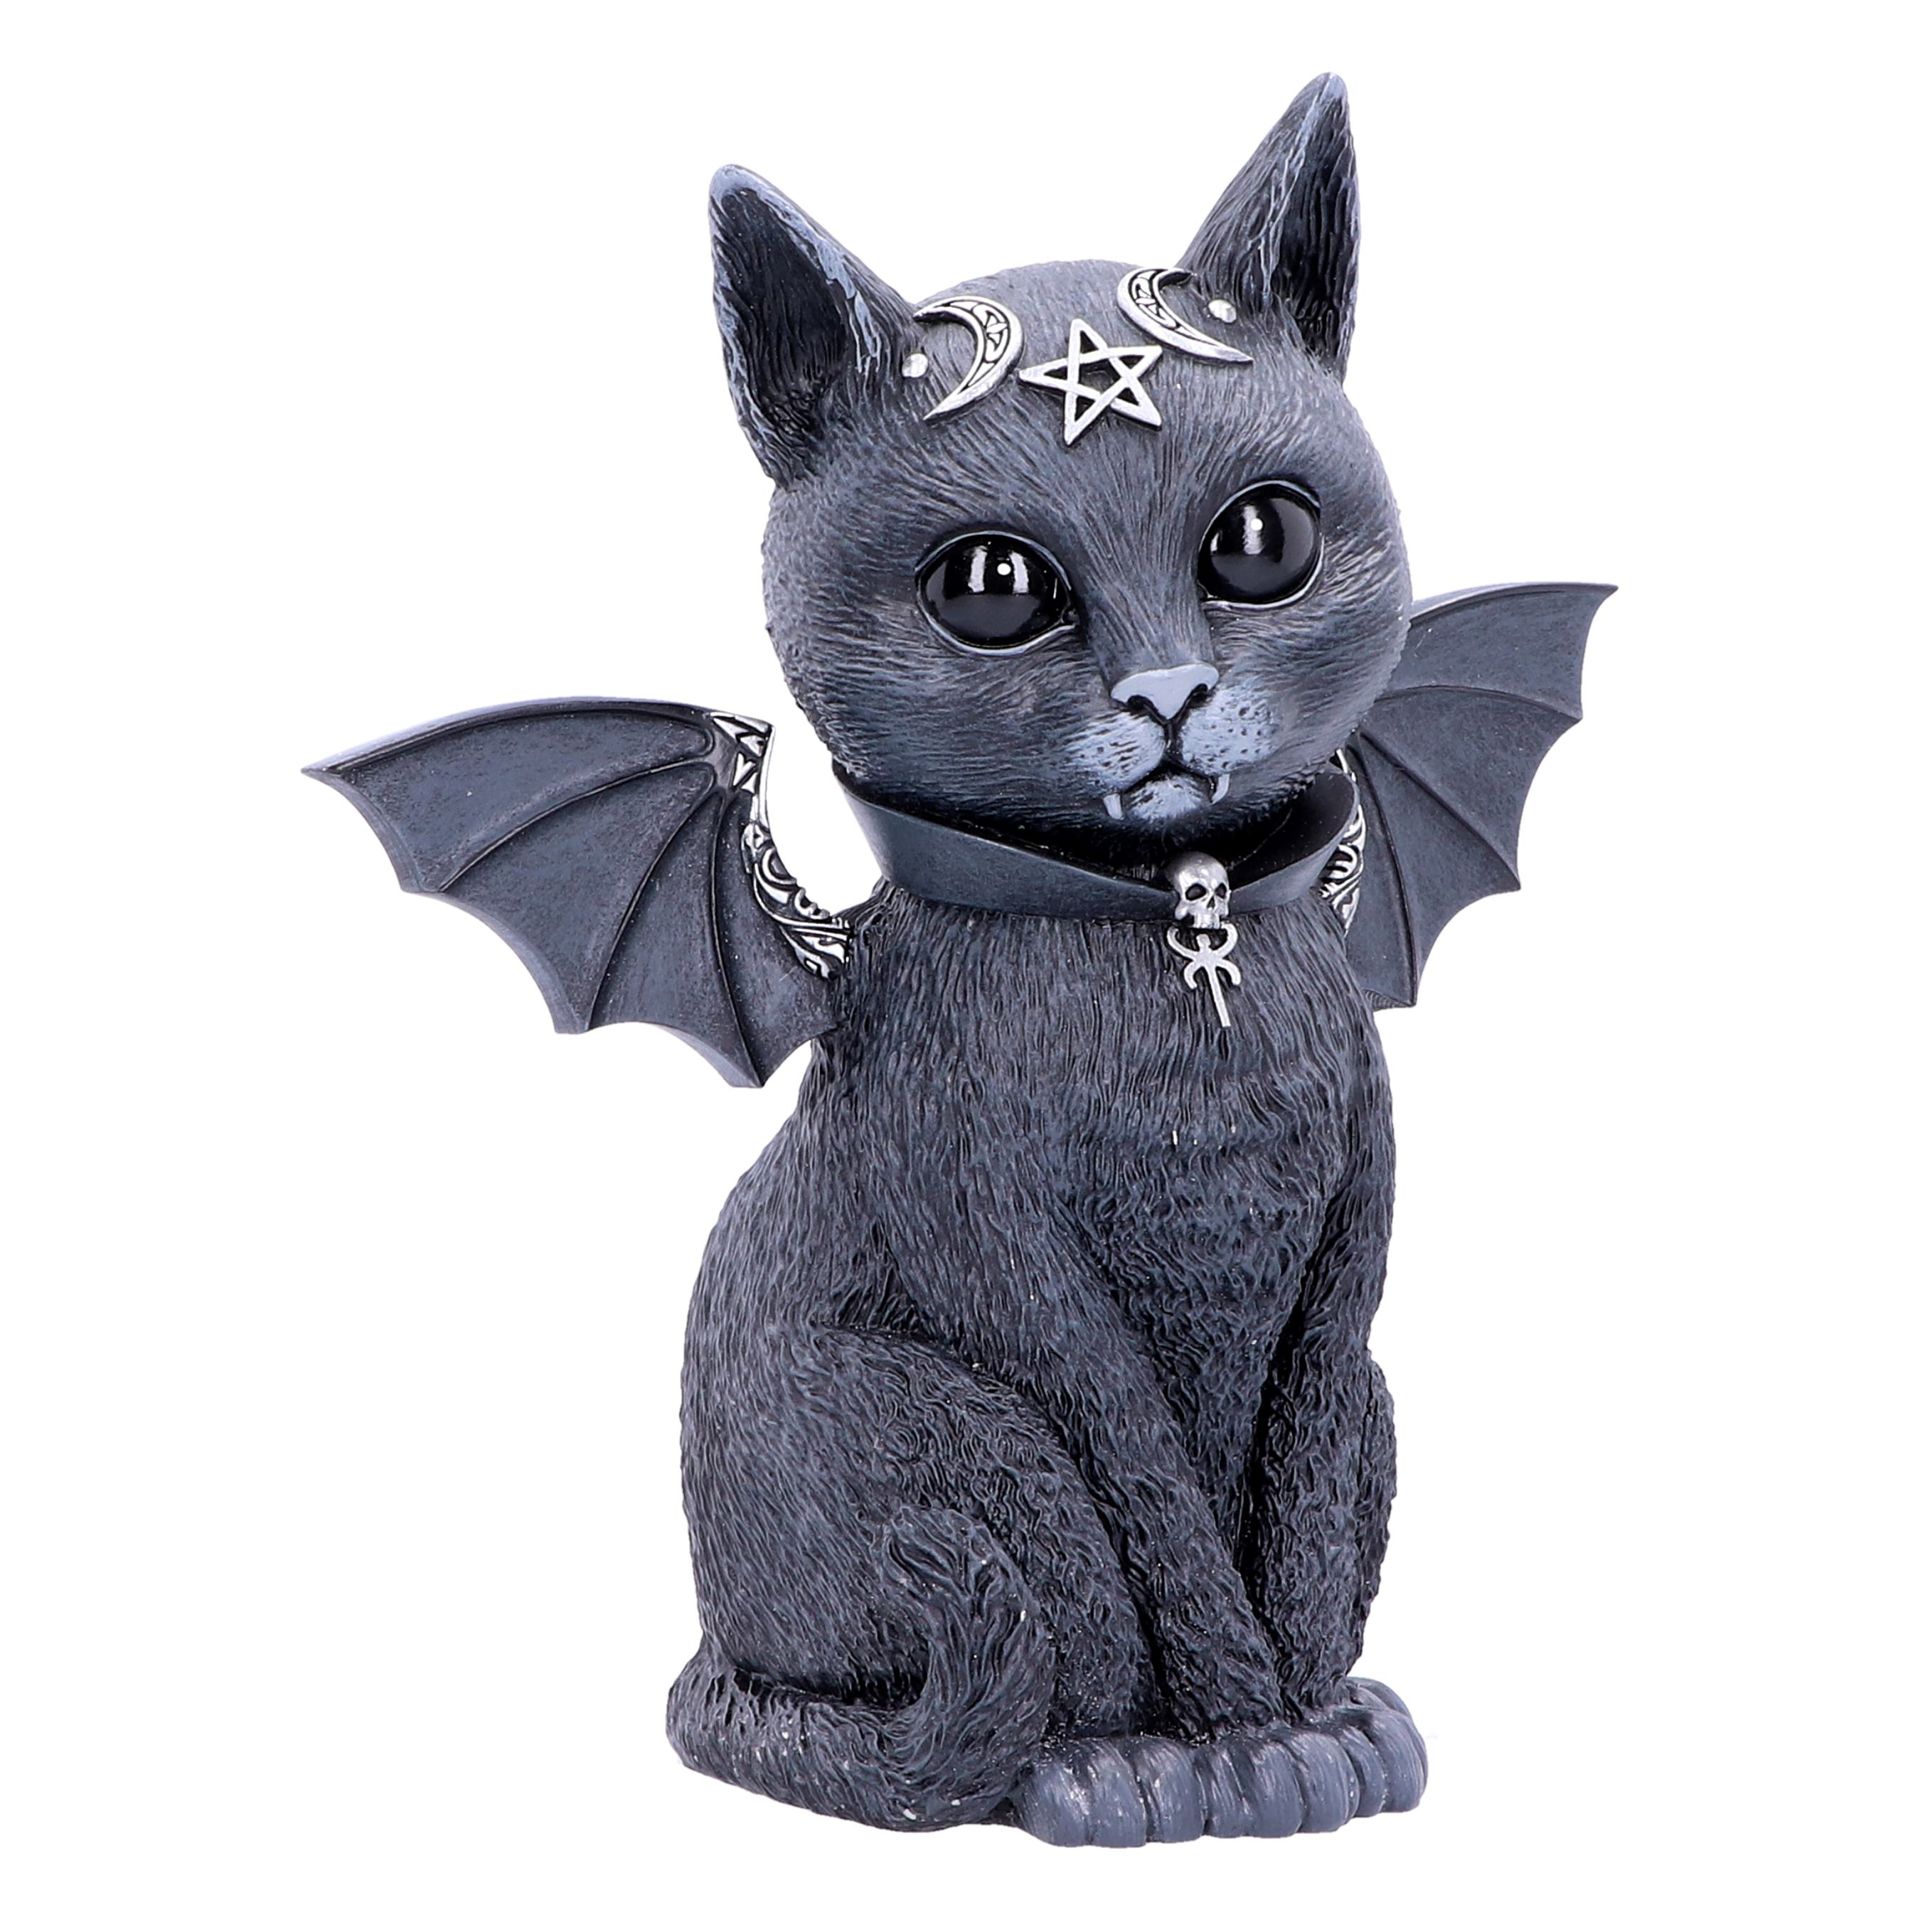 Malpuss - Figurine de chat occulte ailé 24cm